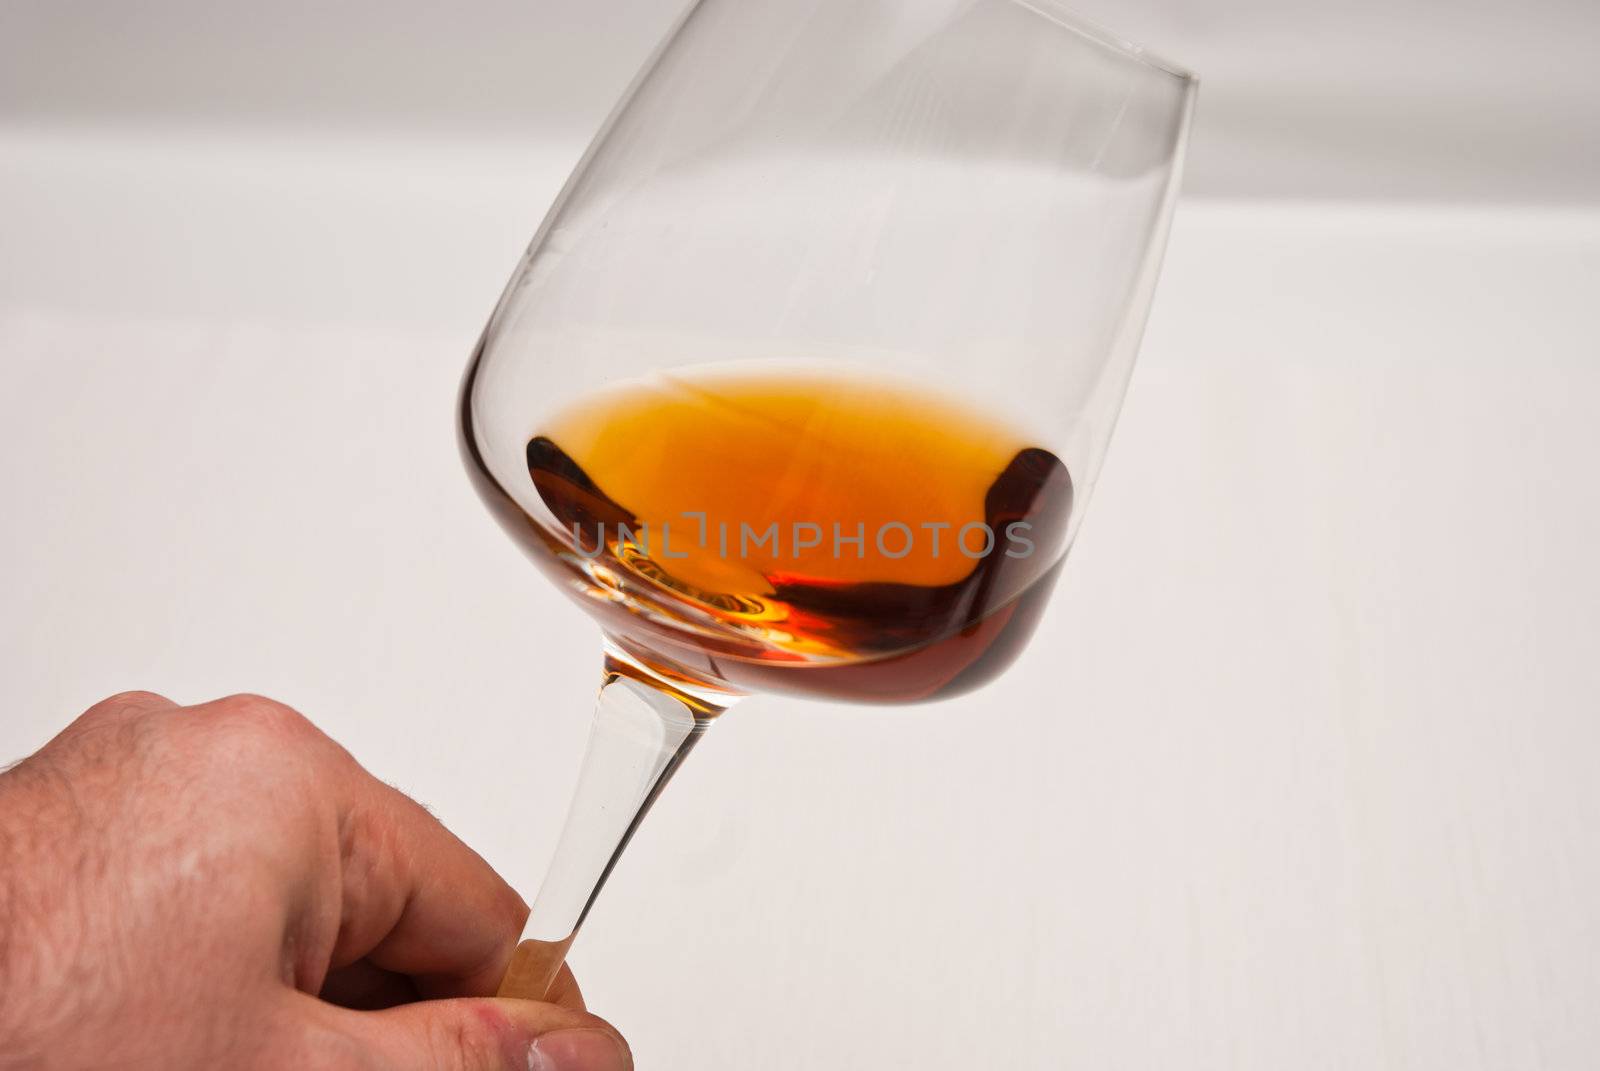 Wine glasses by fabriziopiria